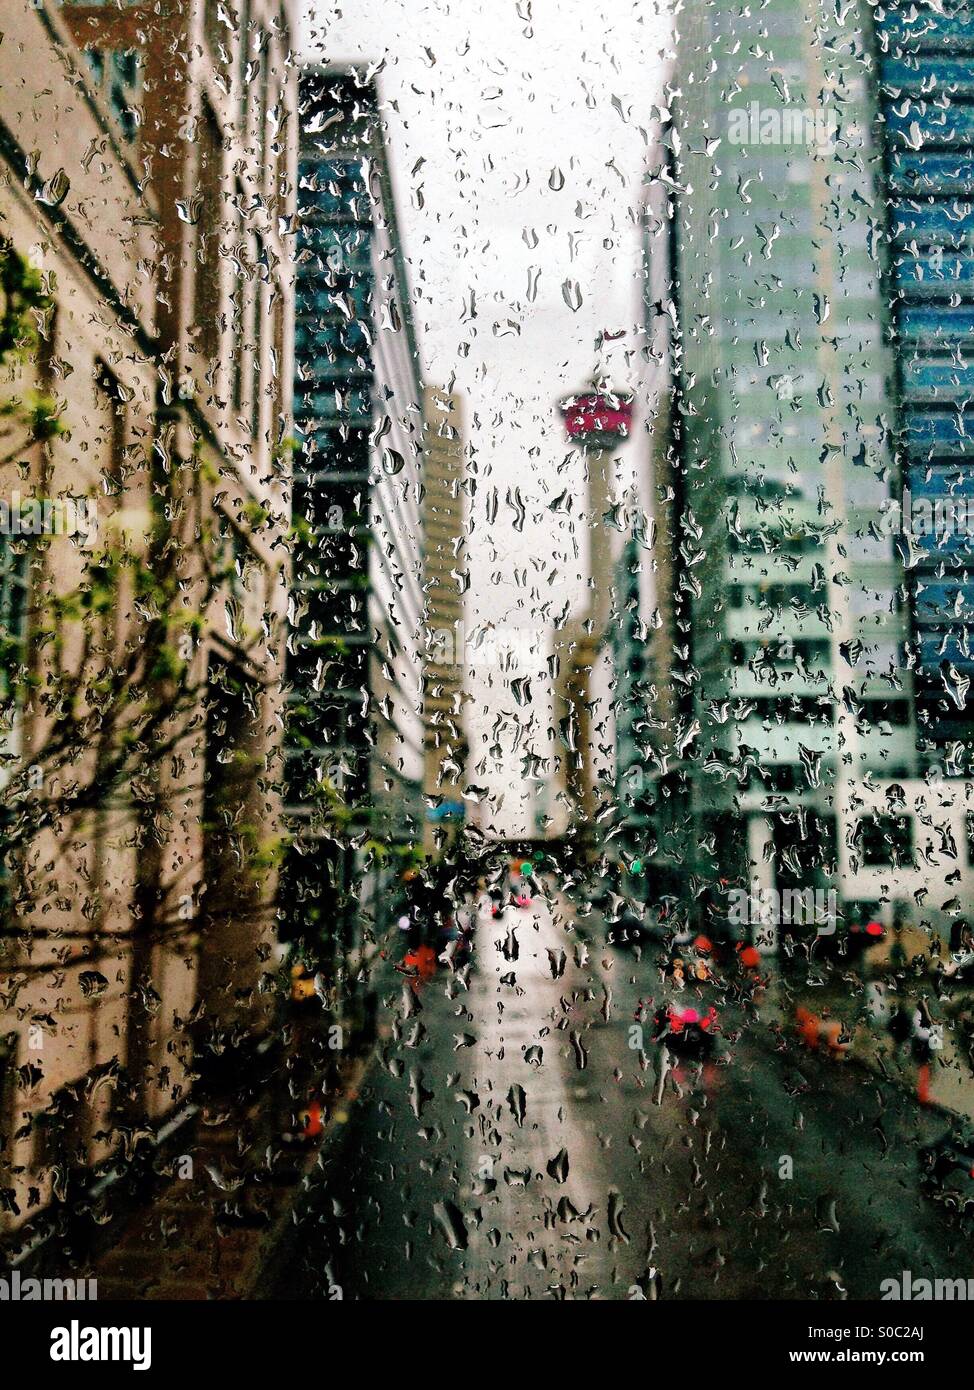 Auf der Suche auf der neunten Avenue durch einen regen bedeckt Fenster in der Innenstadt von Calgary in Richtung der Stadt ikonischen Calgary Tower. Konzentriert sich auf die Regentropfen. Stockfoto